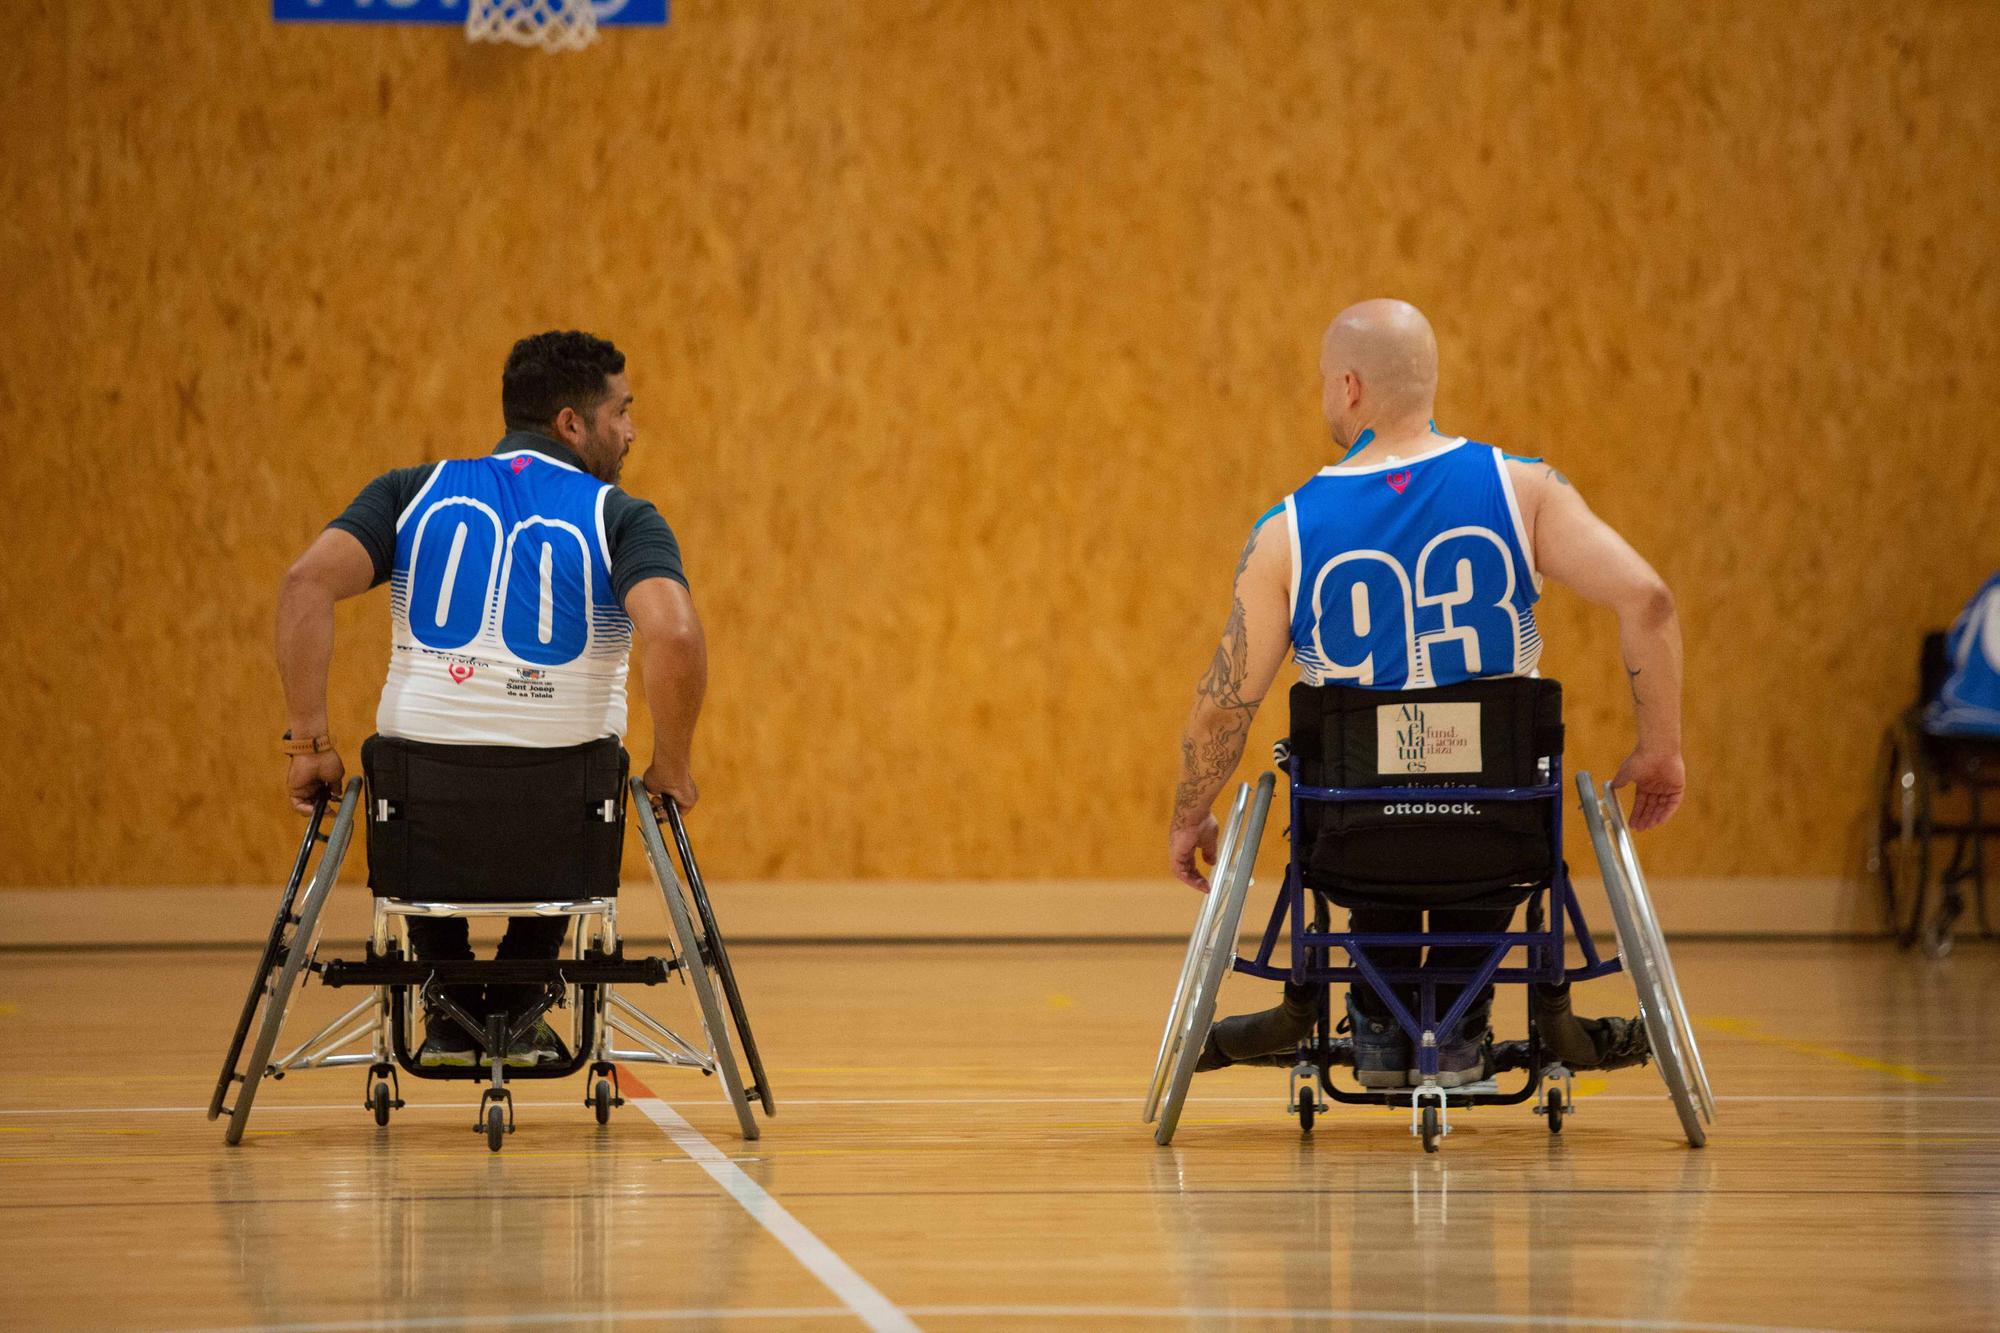 Pablo Hempler, referente ibicenco del basket en sillas de ruedas, busca apoyos